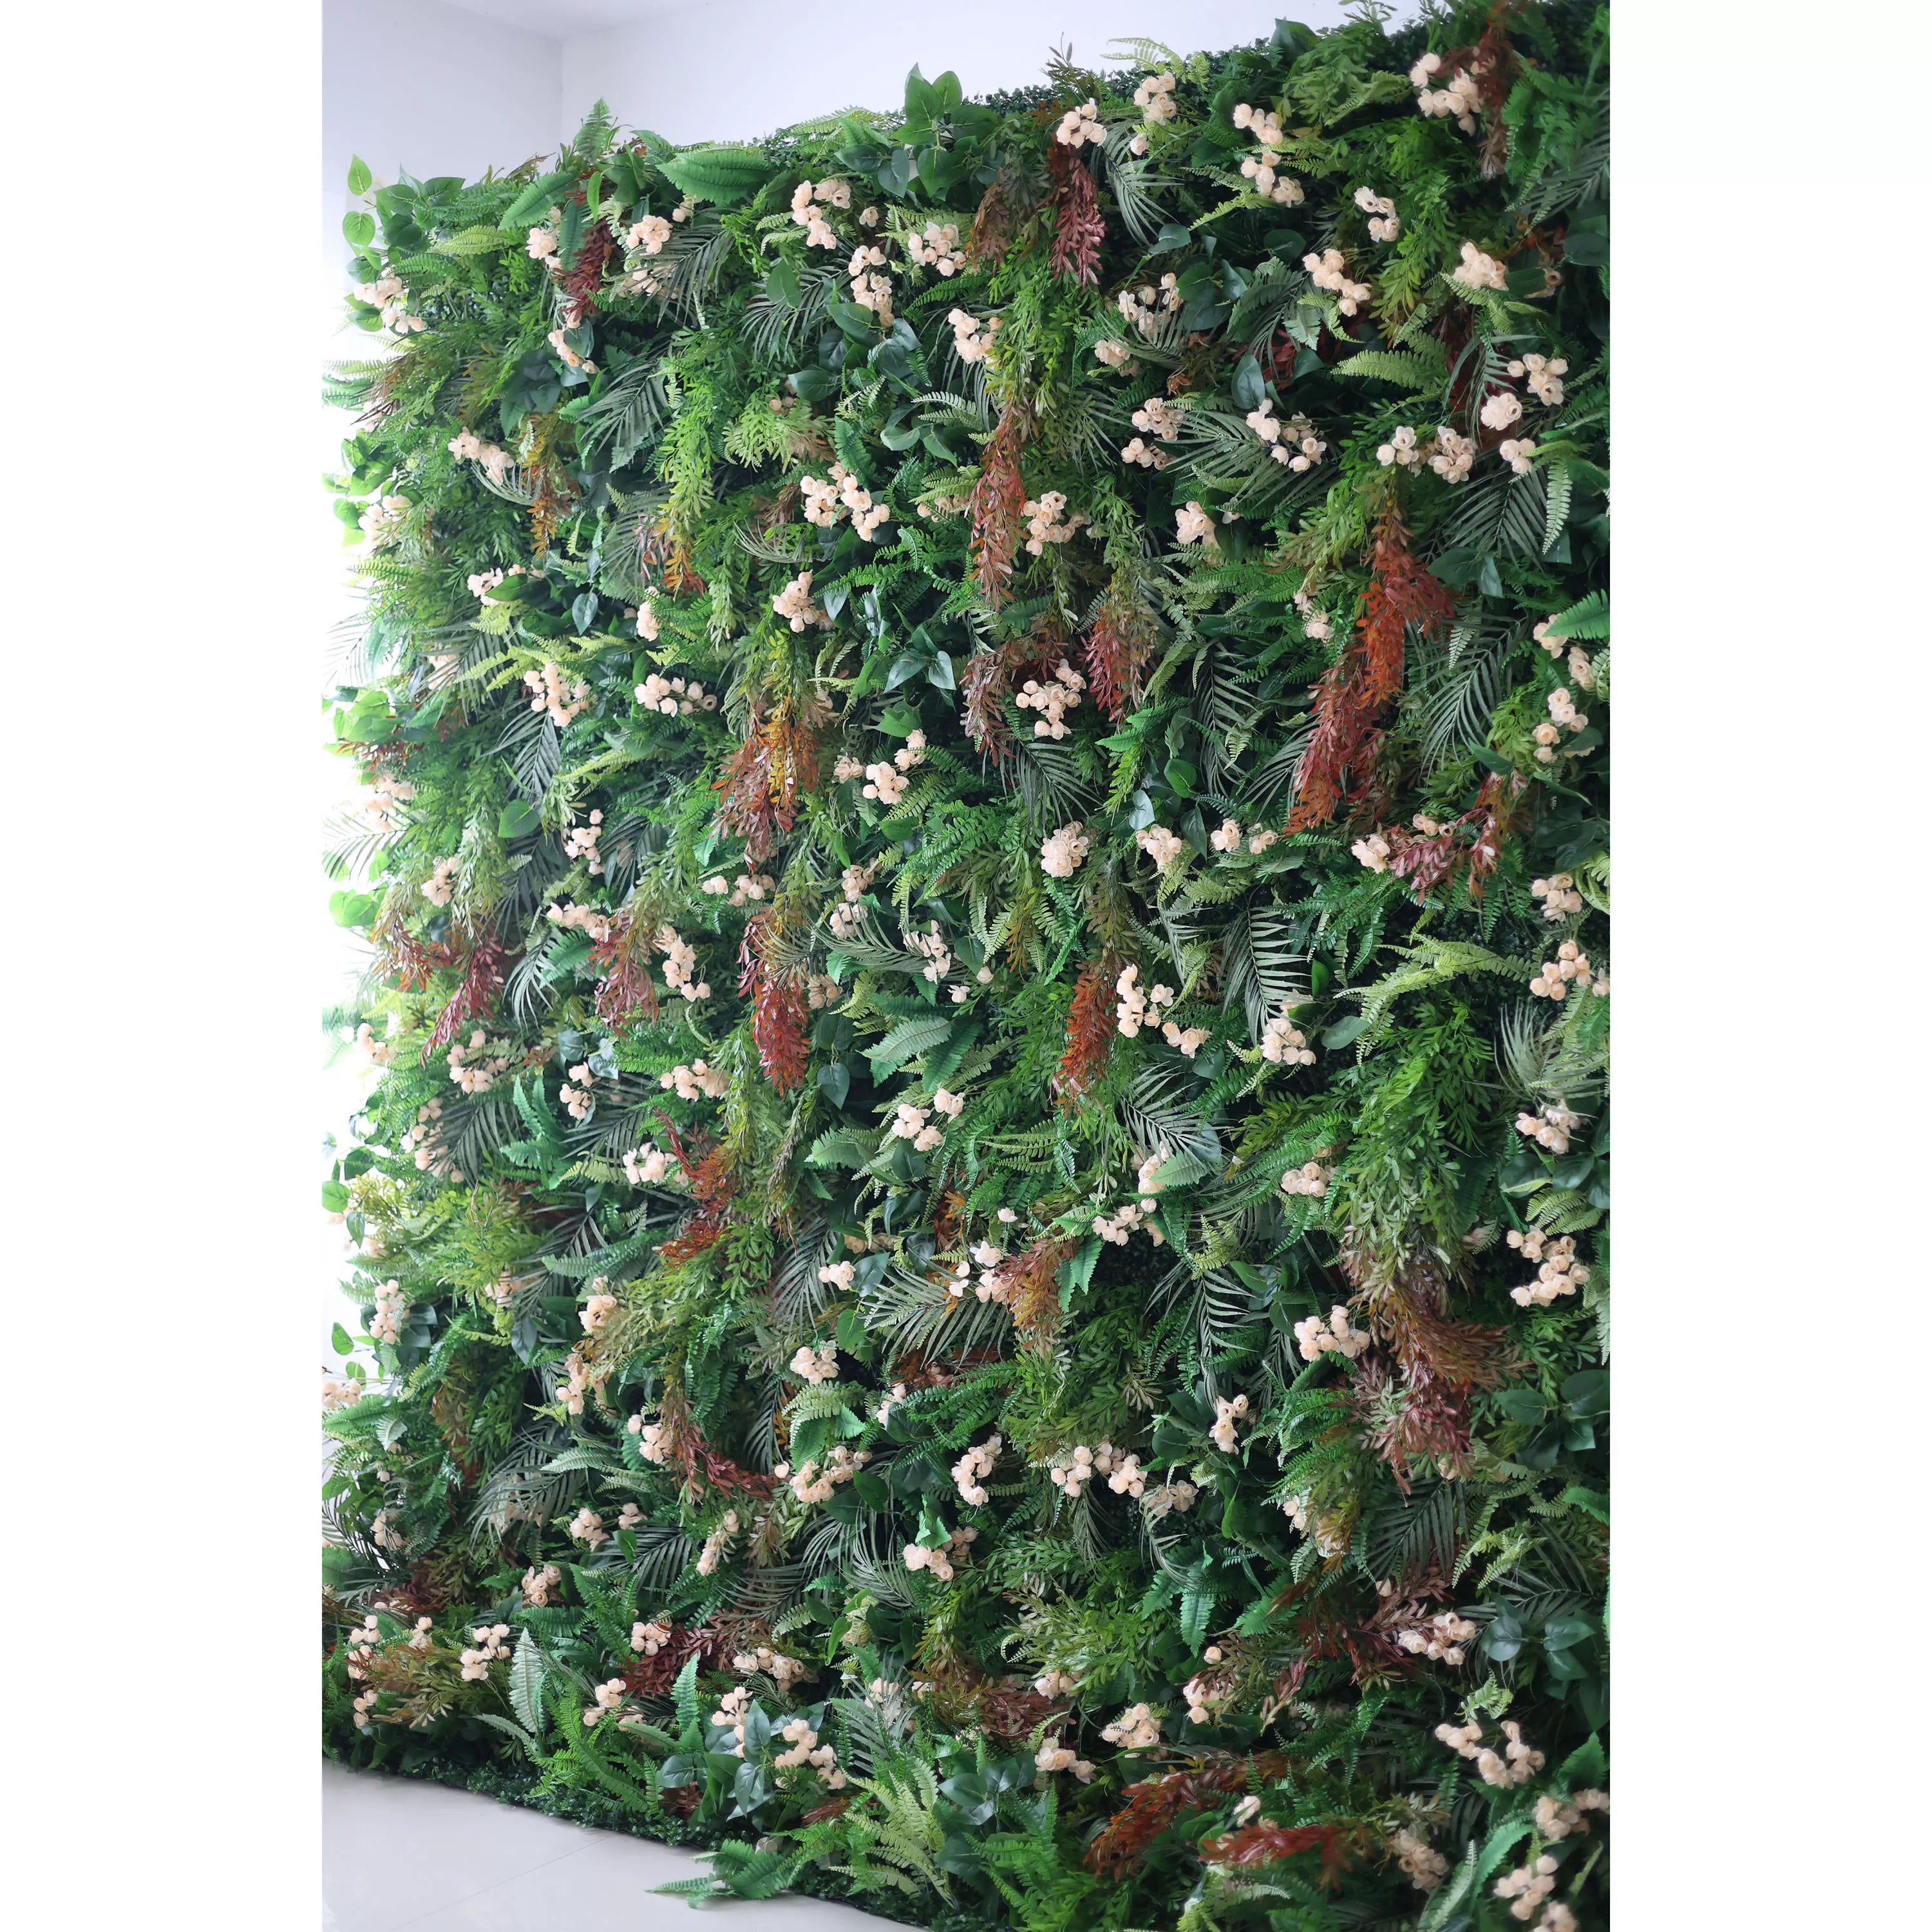 Valar Flowers Mur de forêt tropicale luxuriante avec de délicates fleurs ivoire : plongez dans l'étreinte de la nature – Fusion parfaite de verdure et d'élégance florale-VF-203